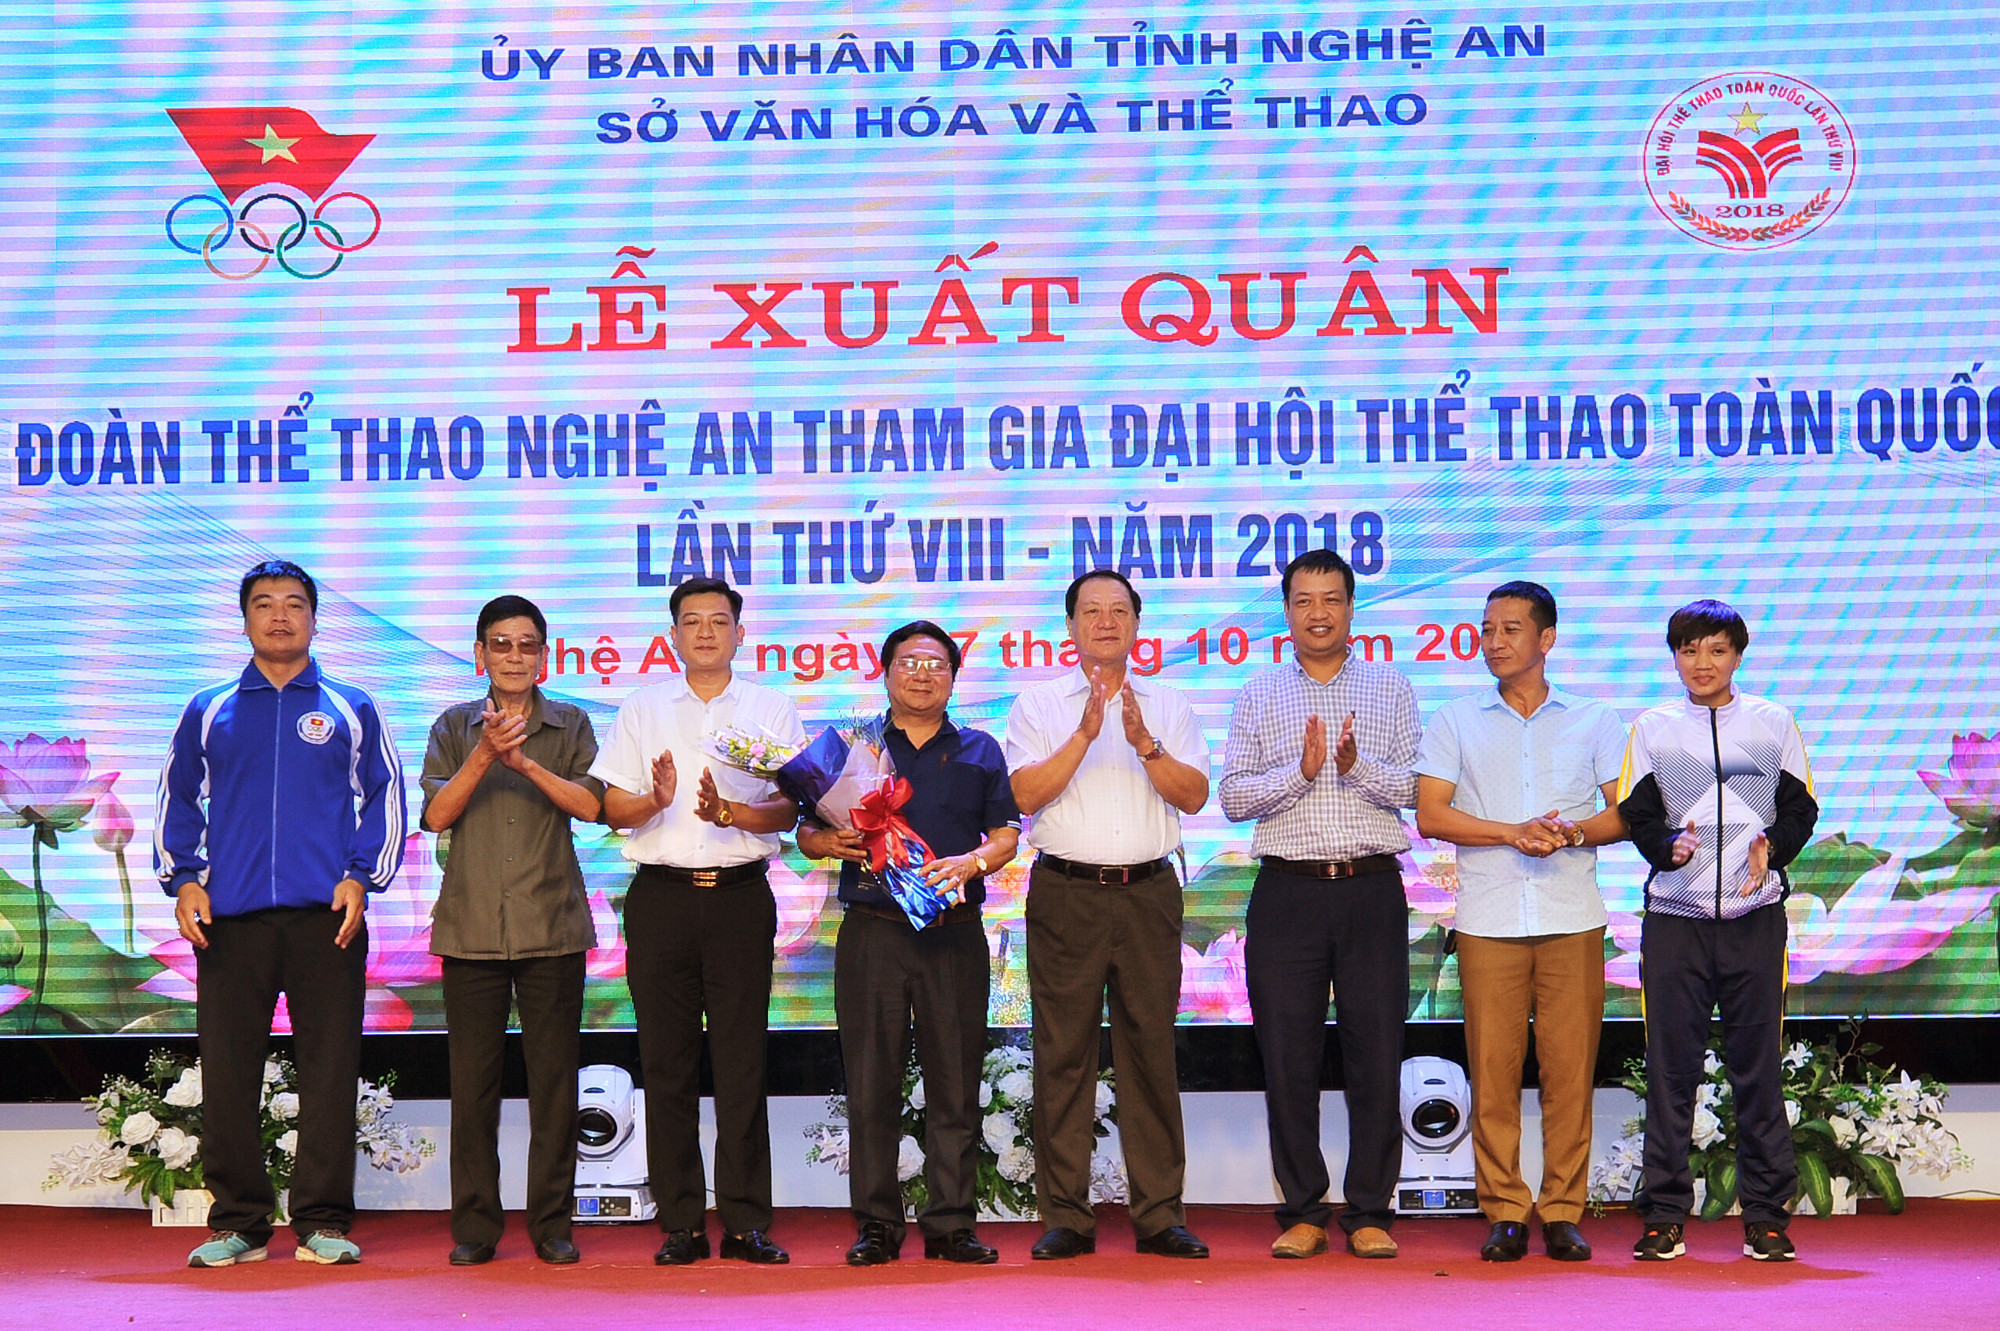 Đồng chí Lê Minh Thông tặng hoa cho Đoàn thể thao Nghệ An. Ảnh: Thành Cường